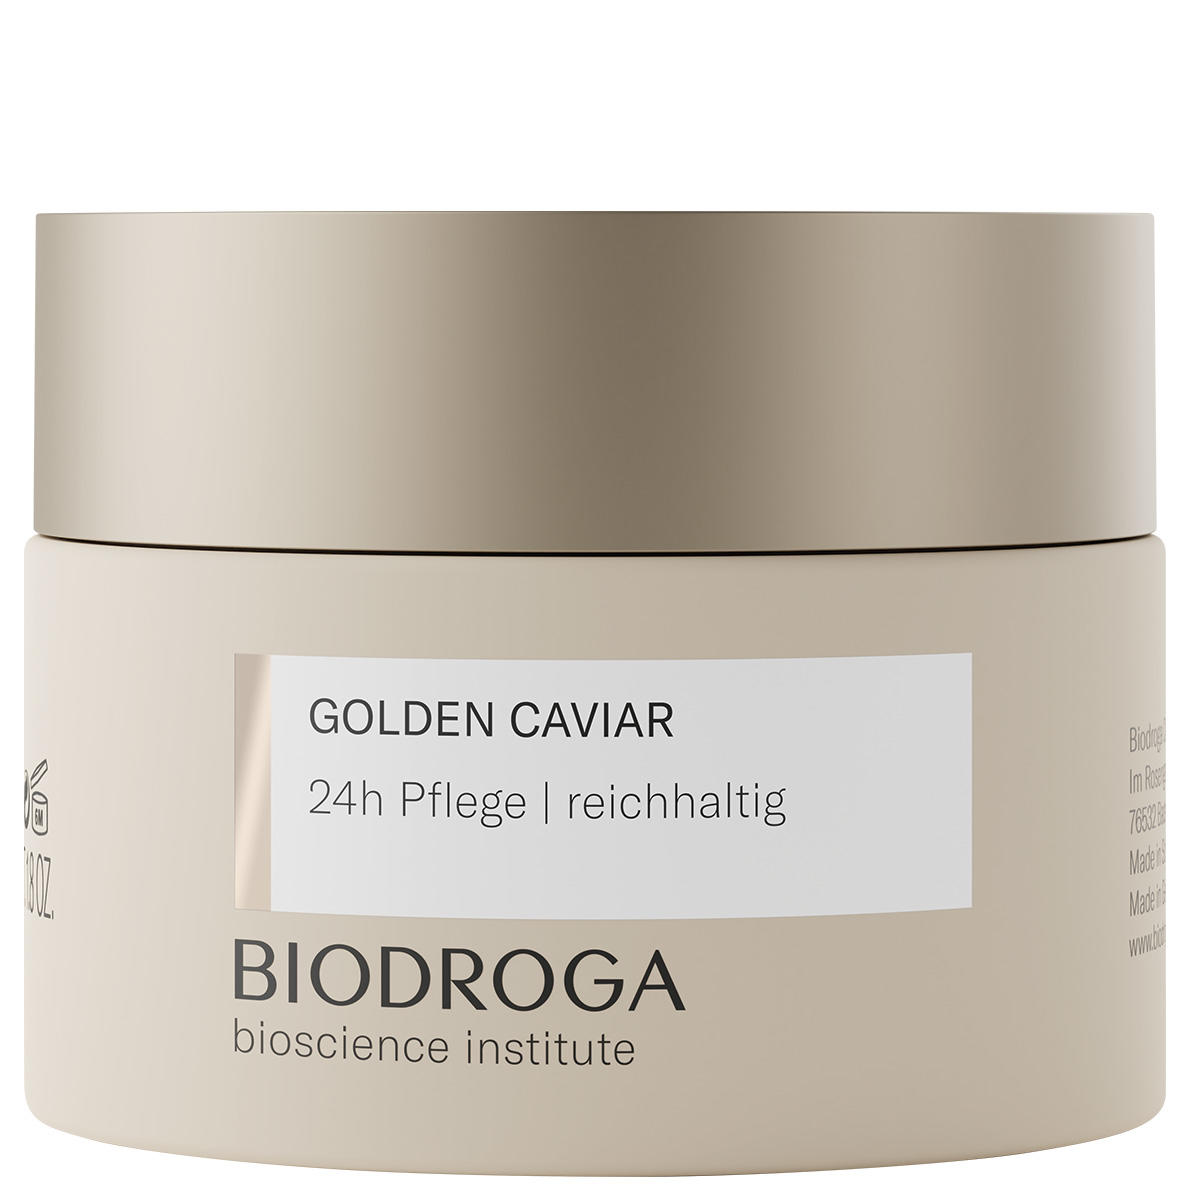 BIODROGA Bioscience Institute GOLDEN CAVIAR Assistenza 24 ore su 24 ricca 50 ml - 1